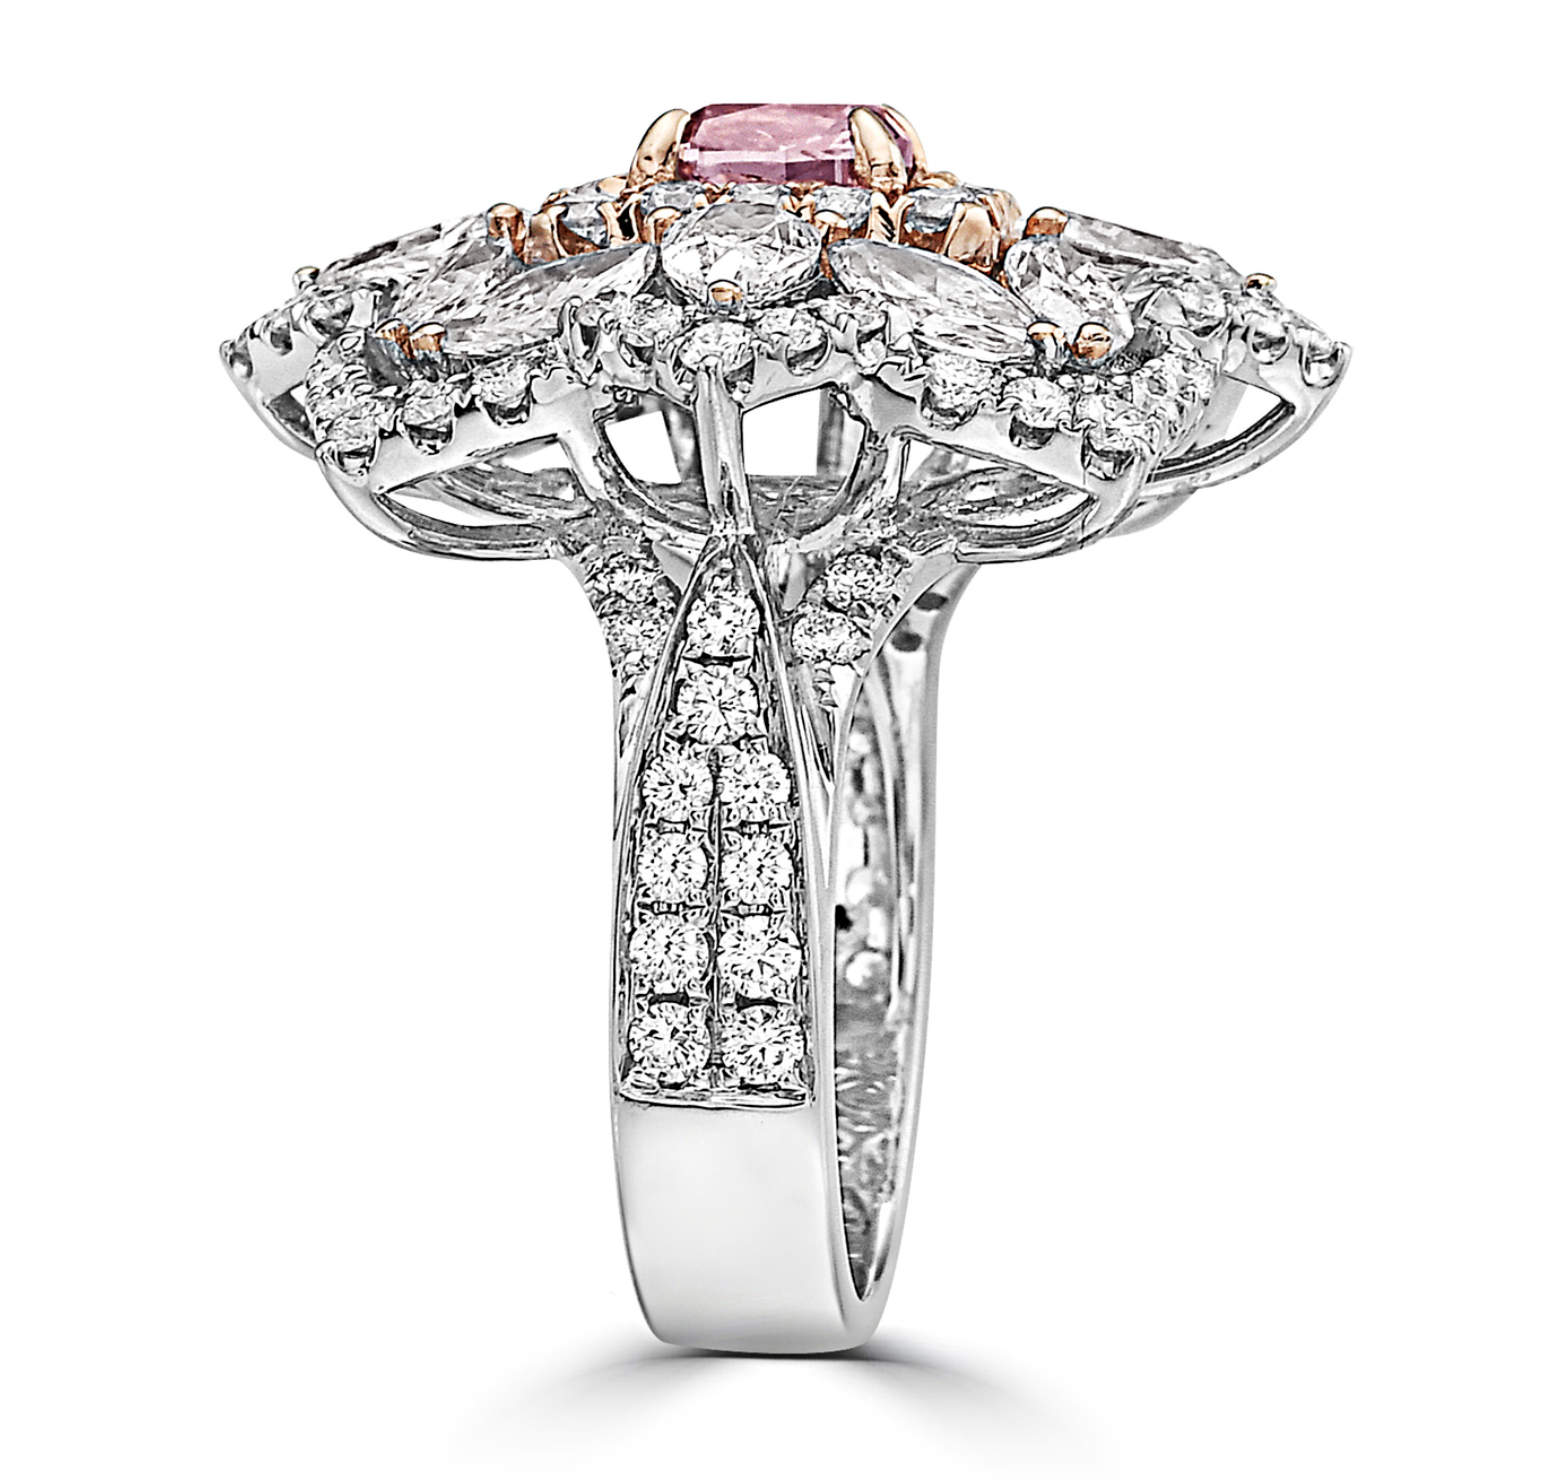 Argyle Pink Diamond and Colorless Diamond Ring